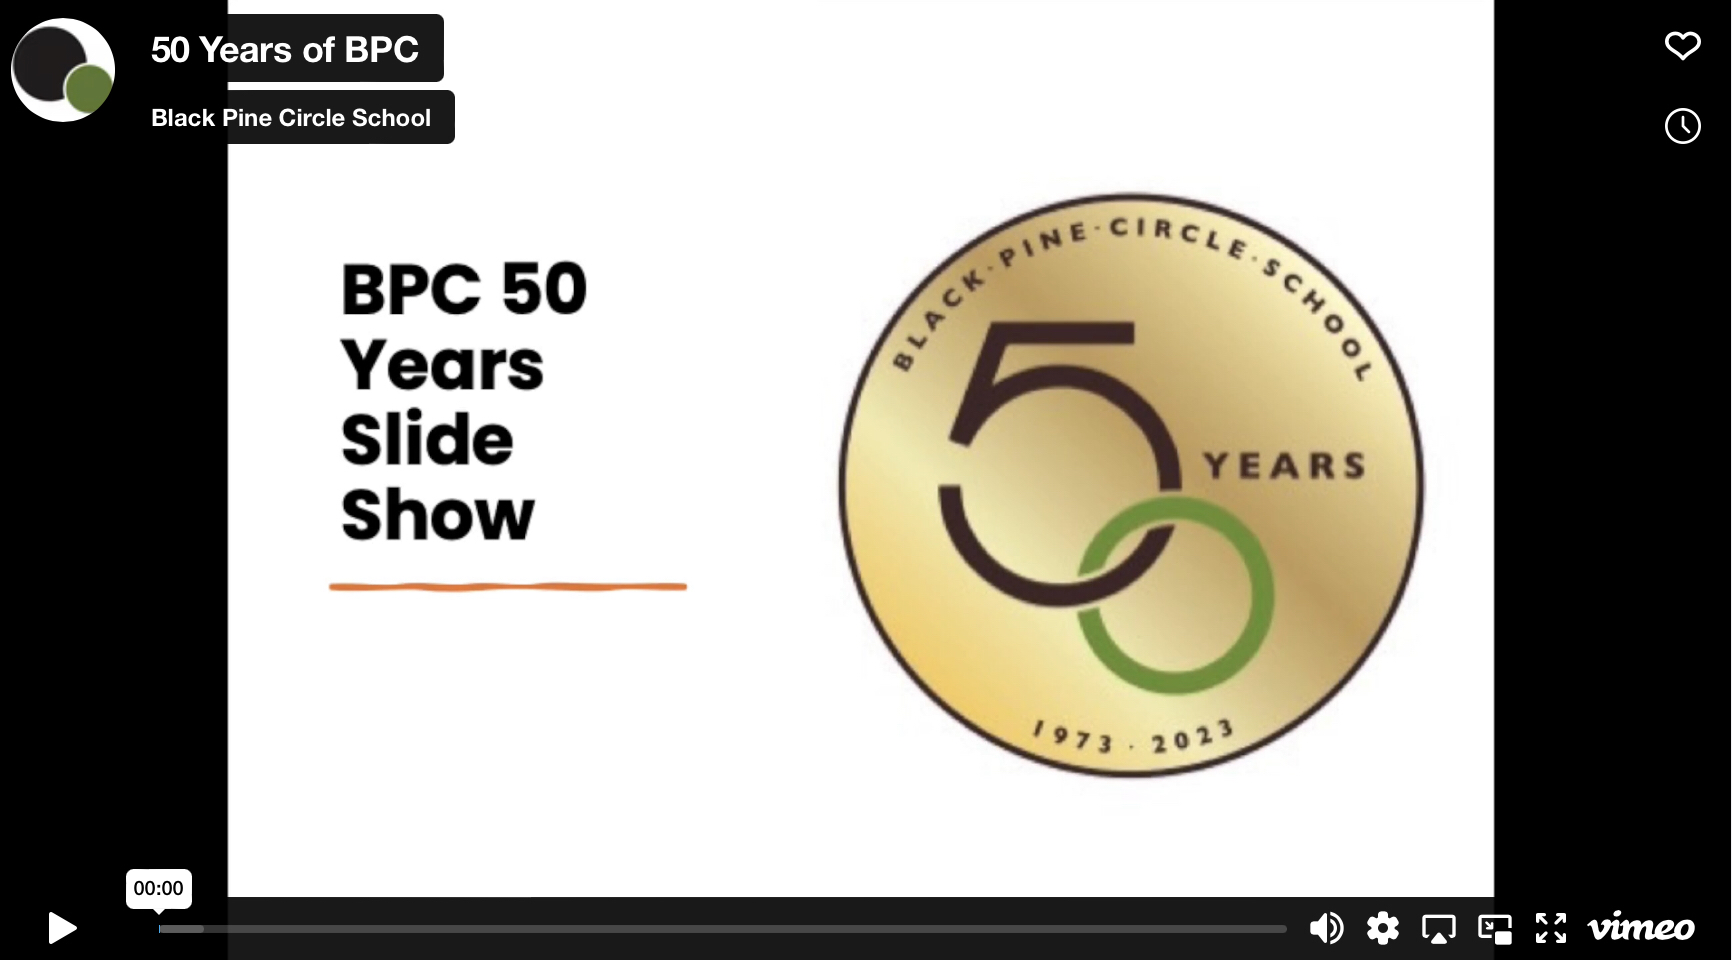 Video cover: 50 years of BPC, slideshow